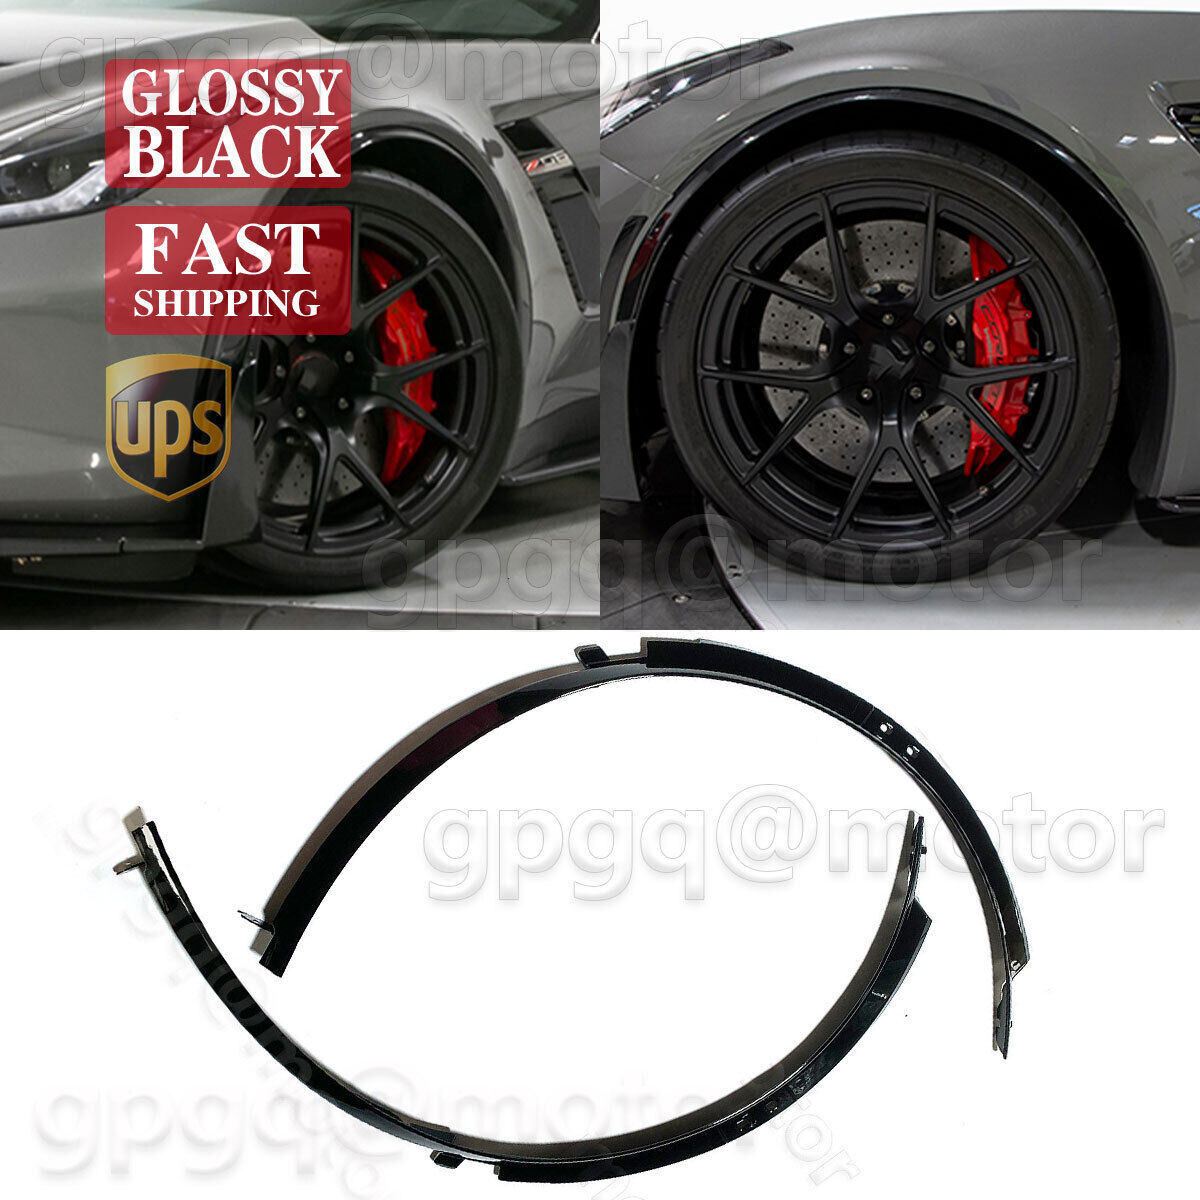 For Corvette C7 Z06 2014-2019 1 Pair Glossy Black Front Wheel Trim Fender Flares